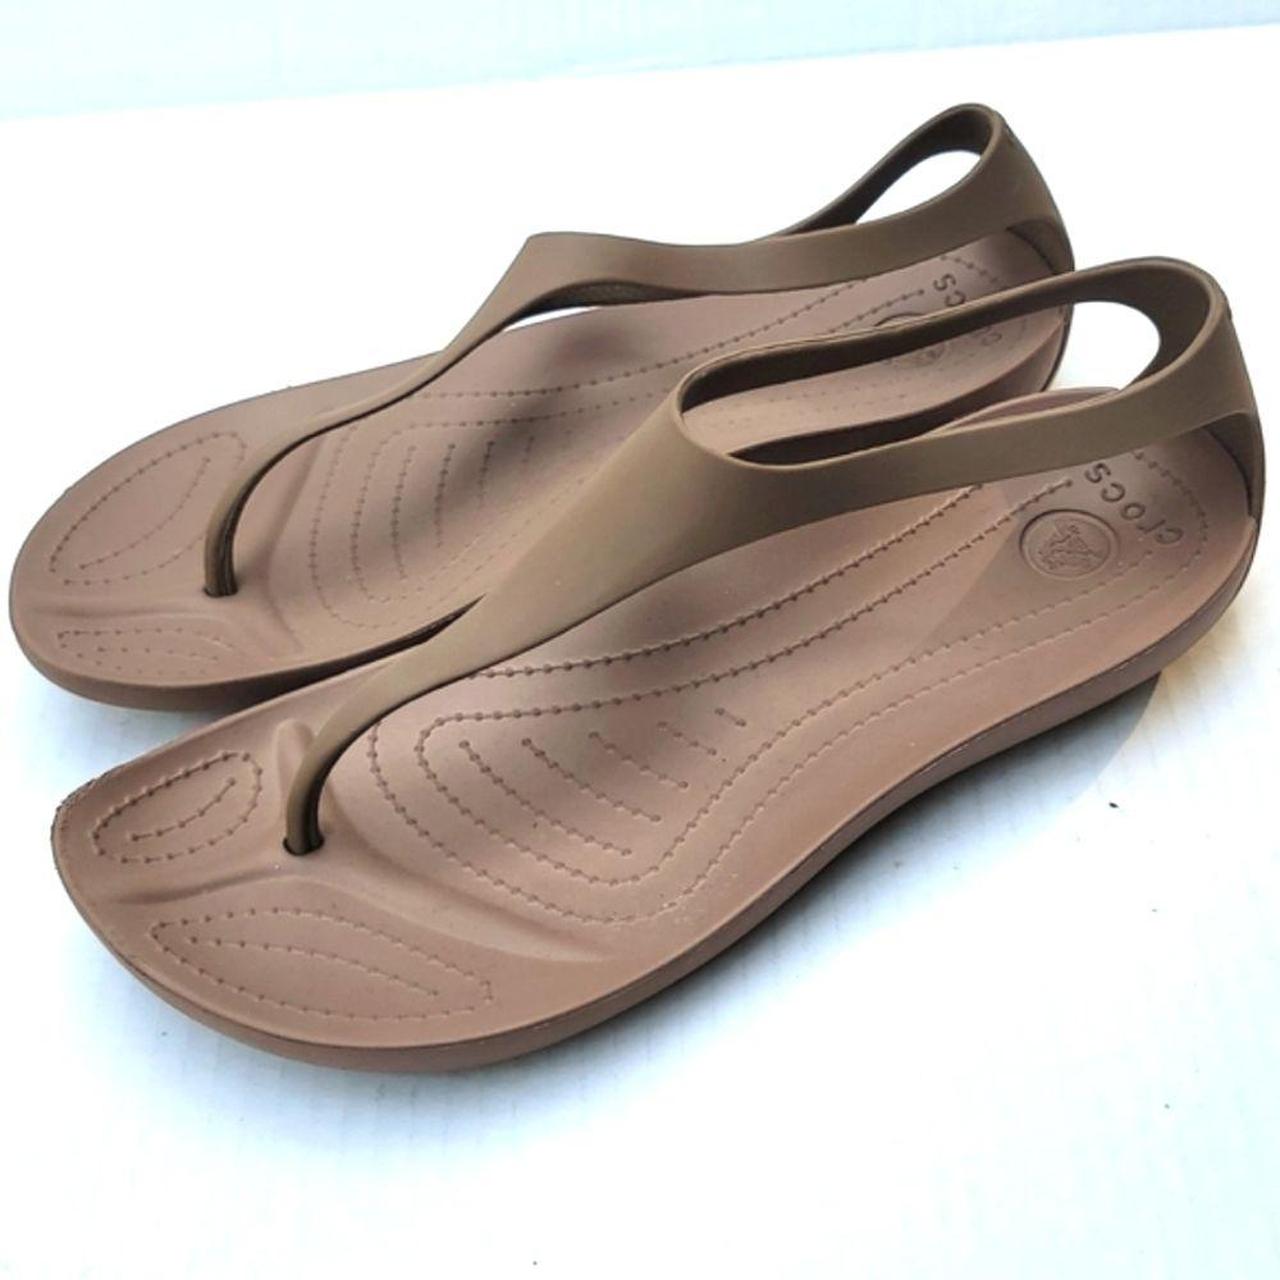 Product Image 3 - Crocs sexiankle flip flop sandals